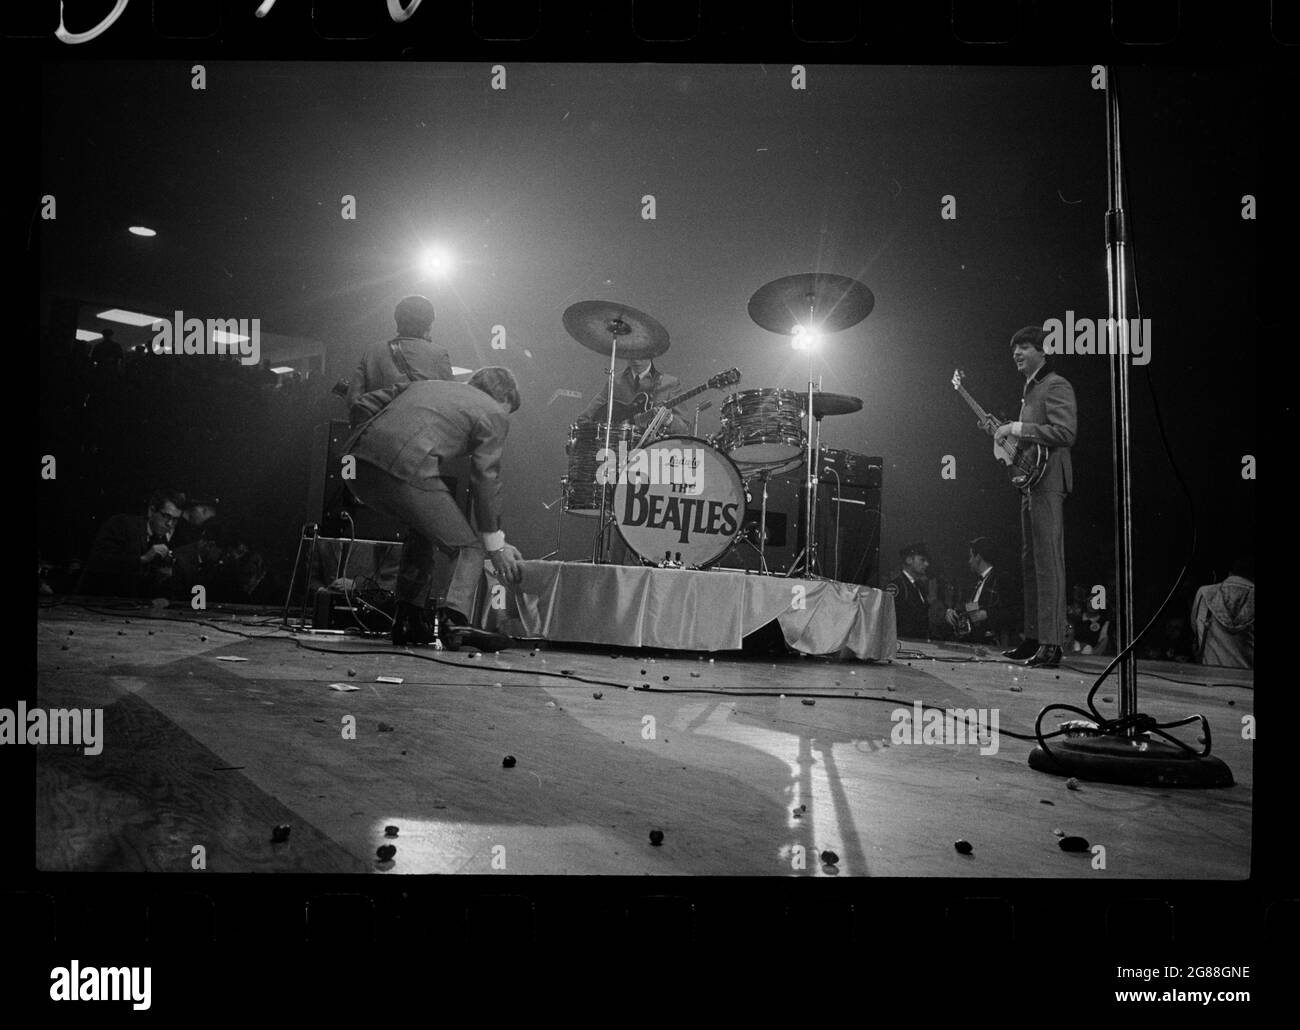 Les Beatles sur scène – groupe britannique de Rock and Roll au Washington Coliseum. 11 février 1964. Trikosko, Marion S., photographe. Banque D'Images